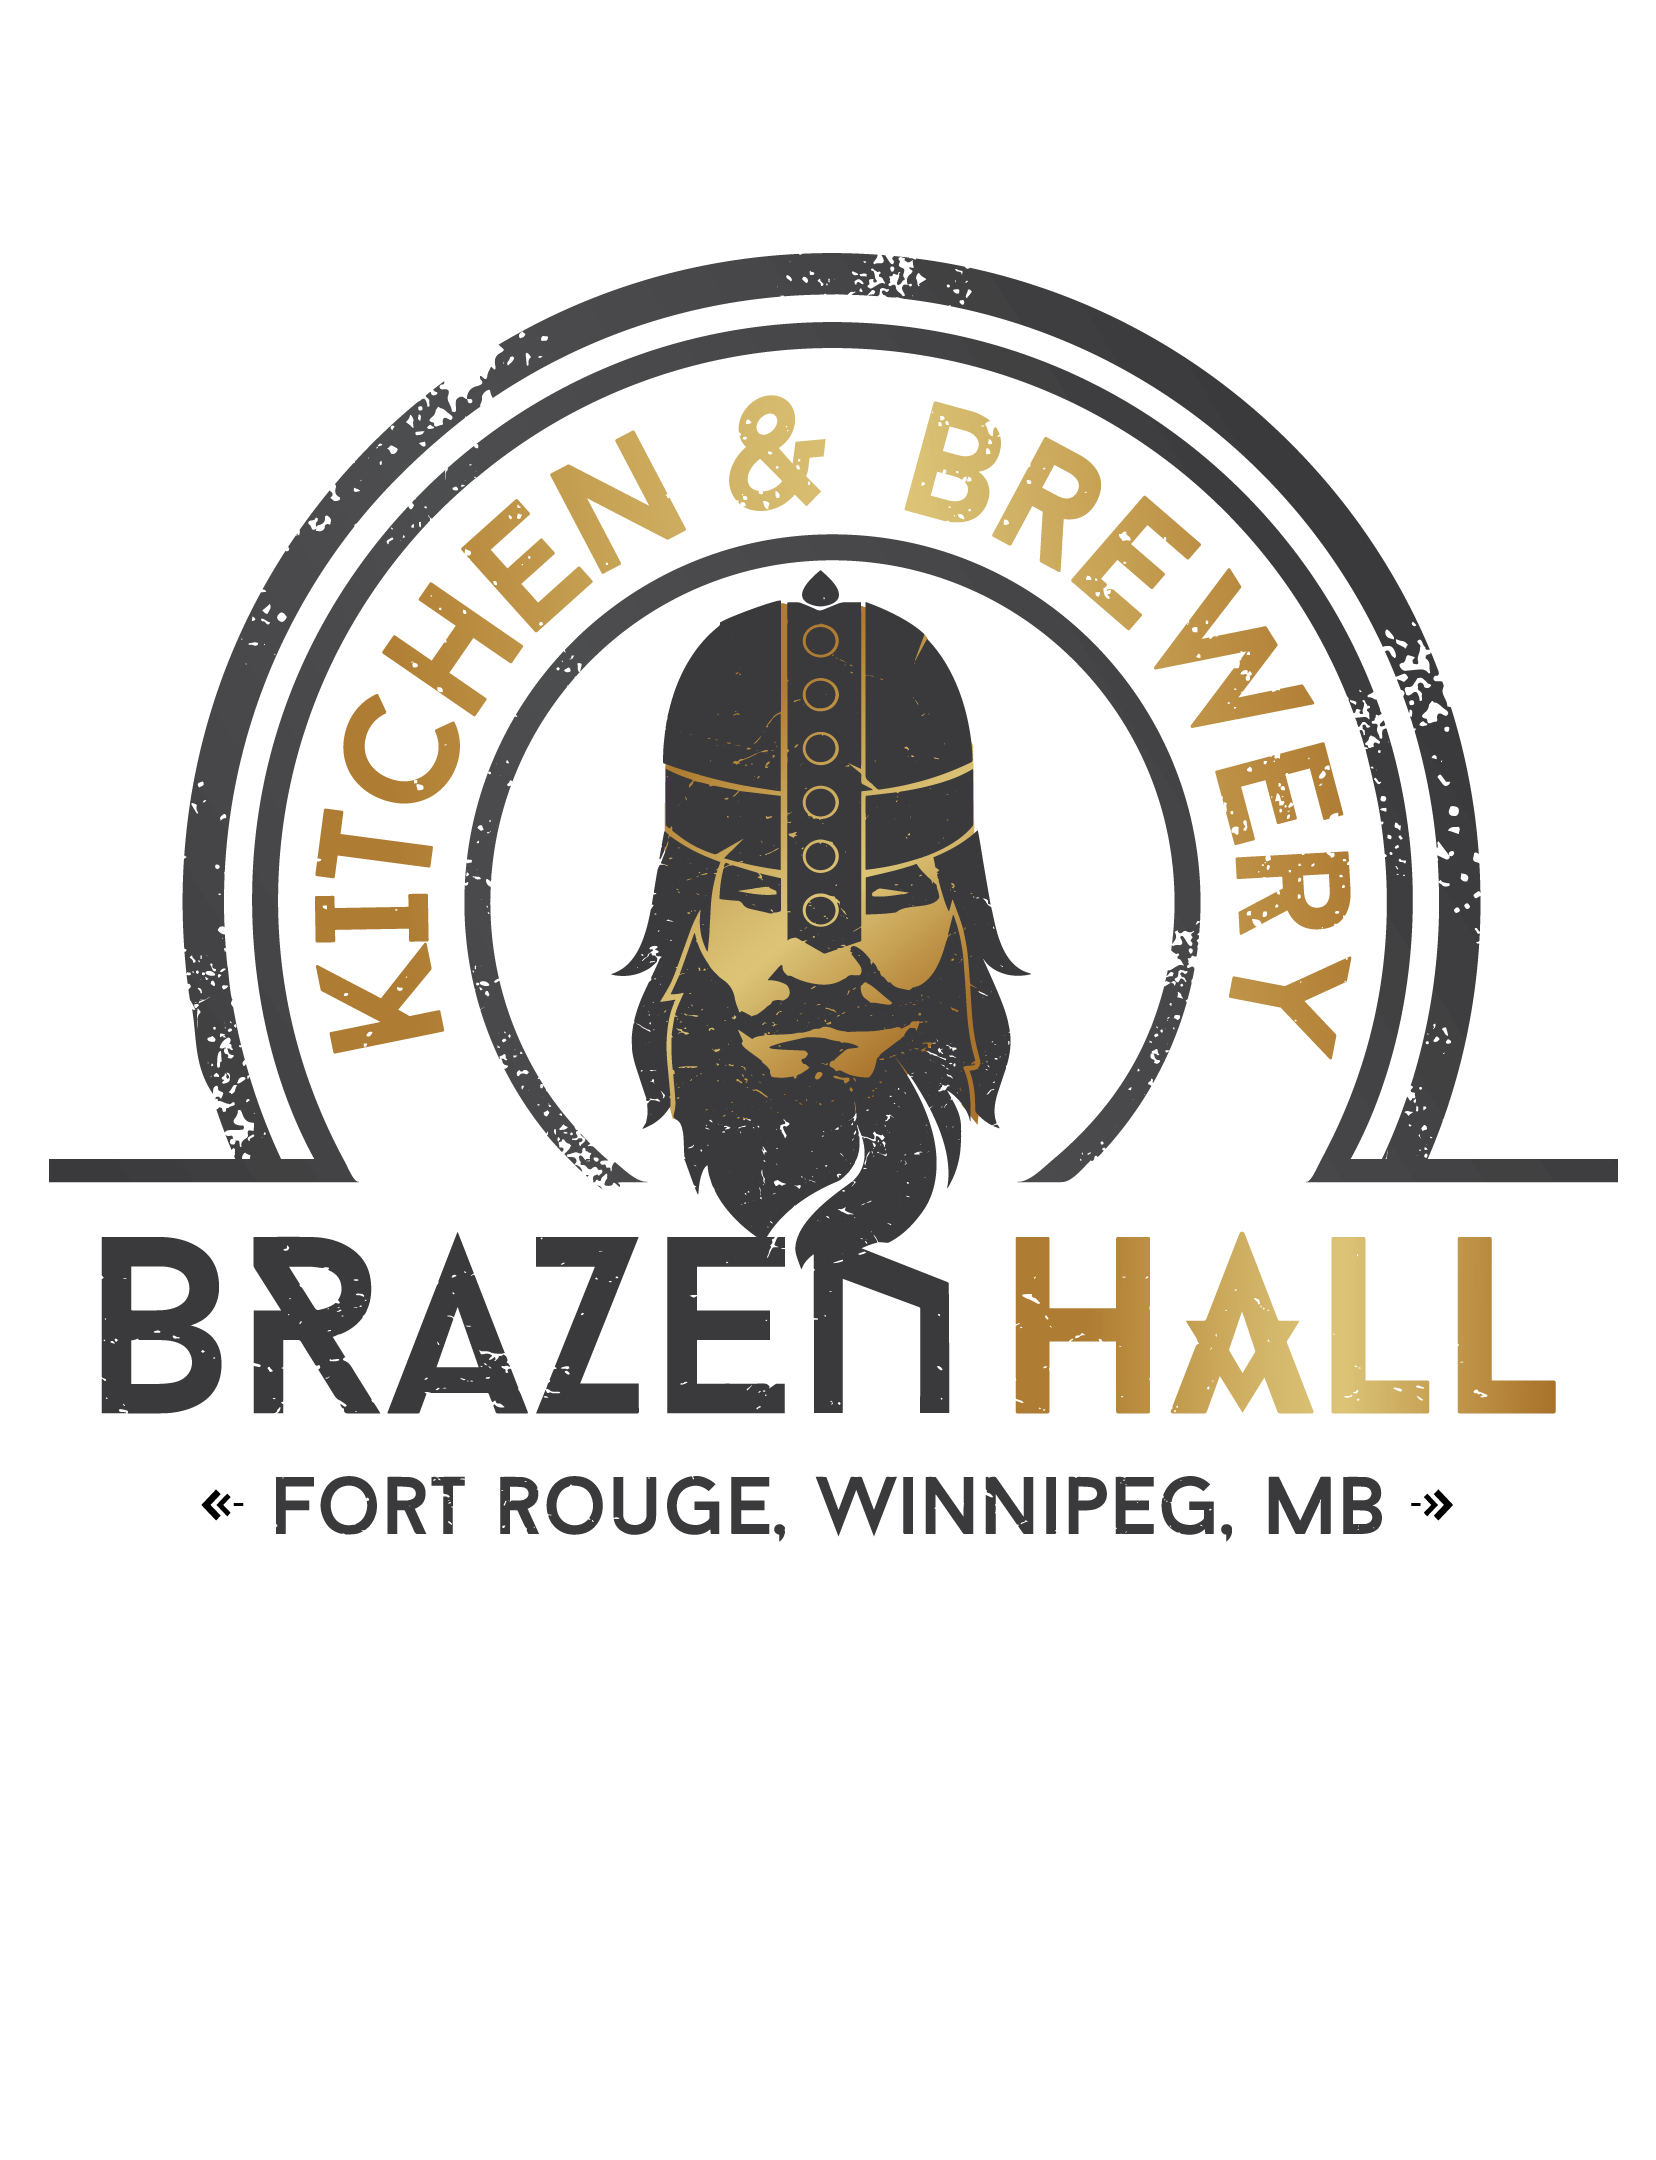 Brazen Hall Kitchen & Brewery